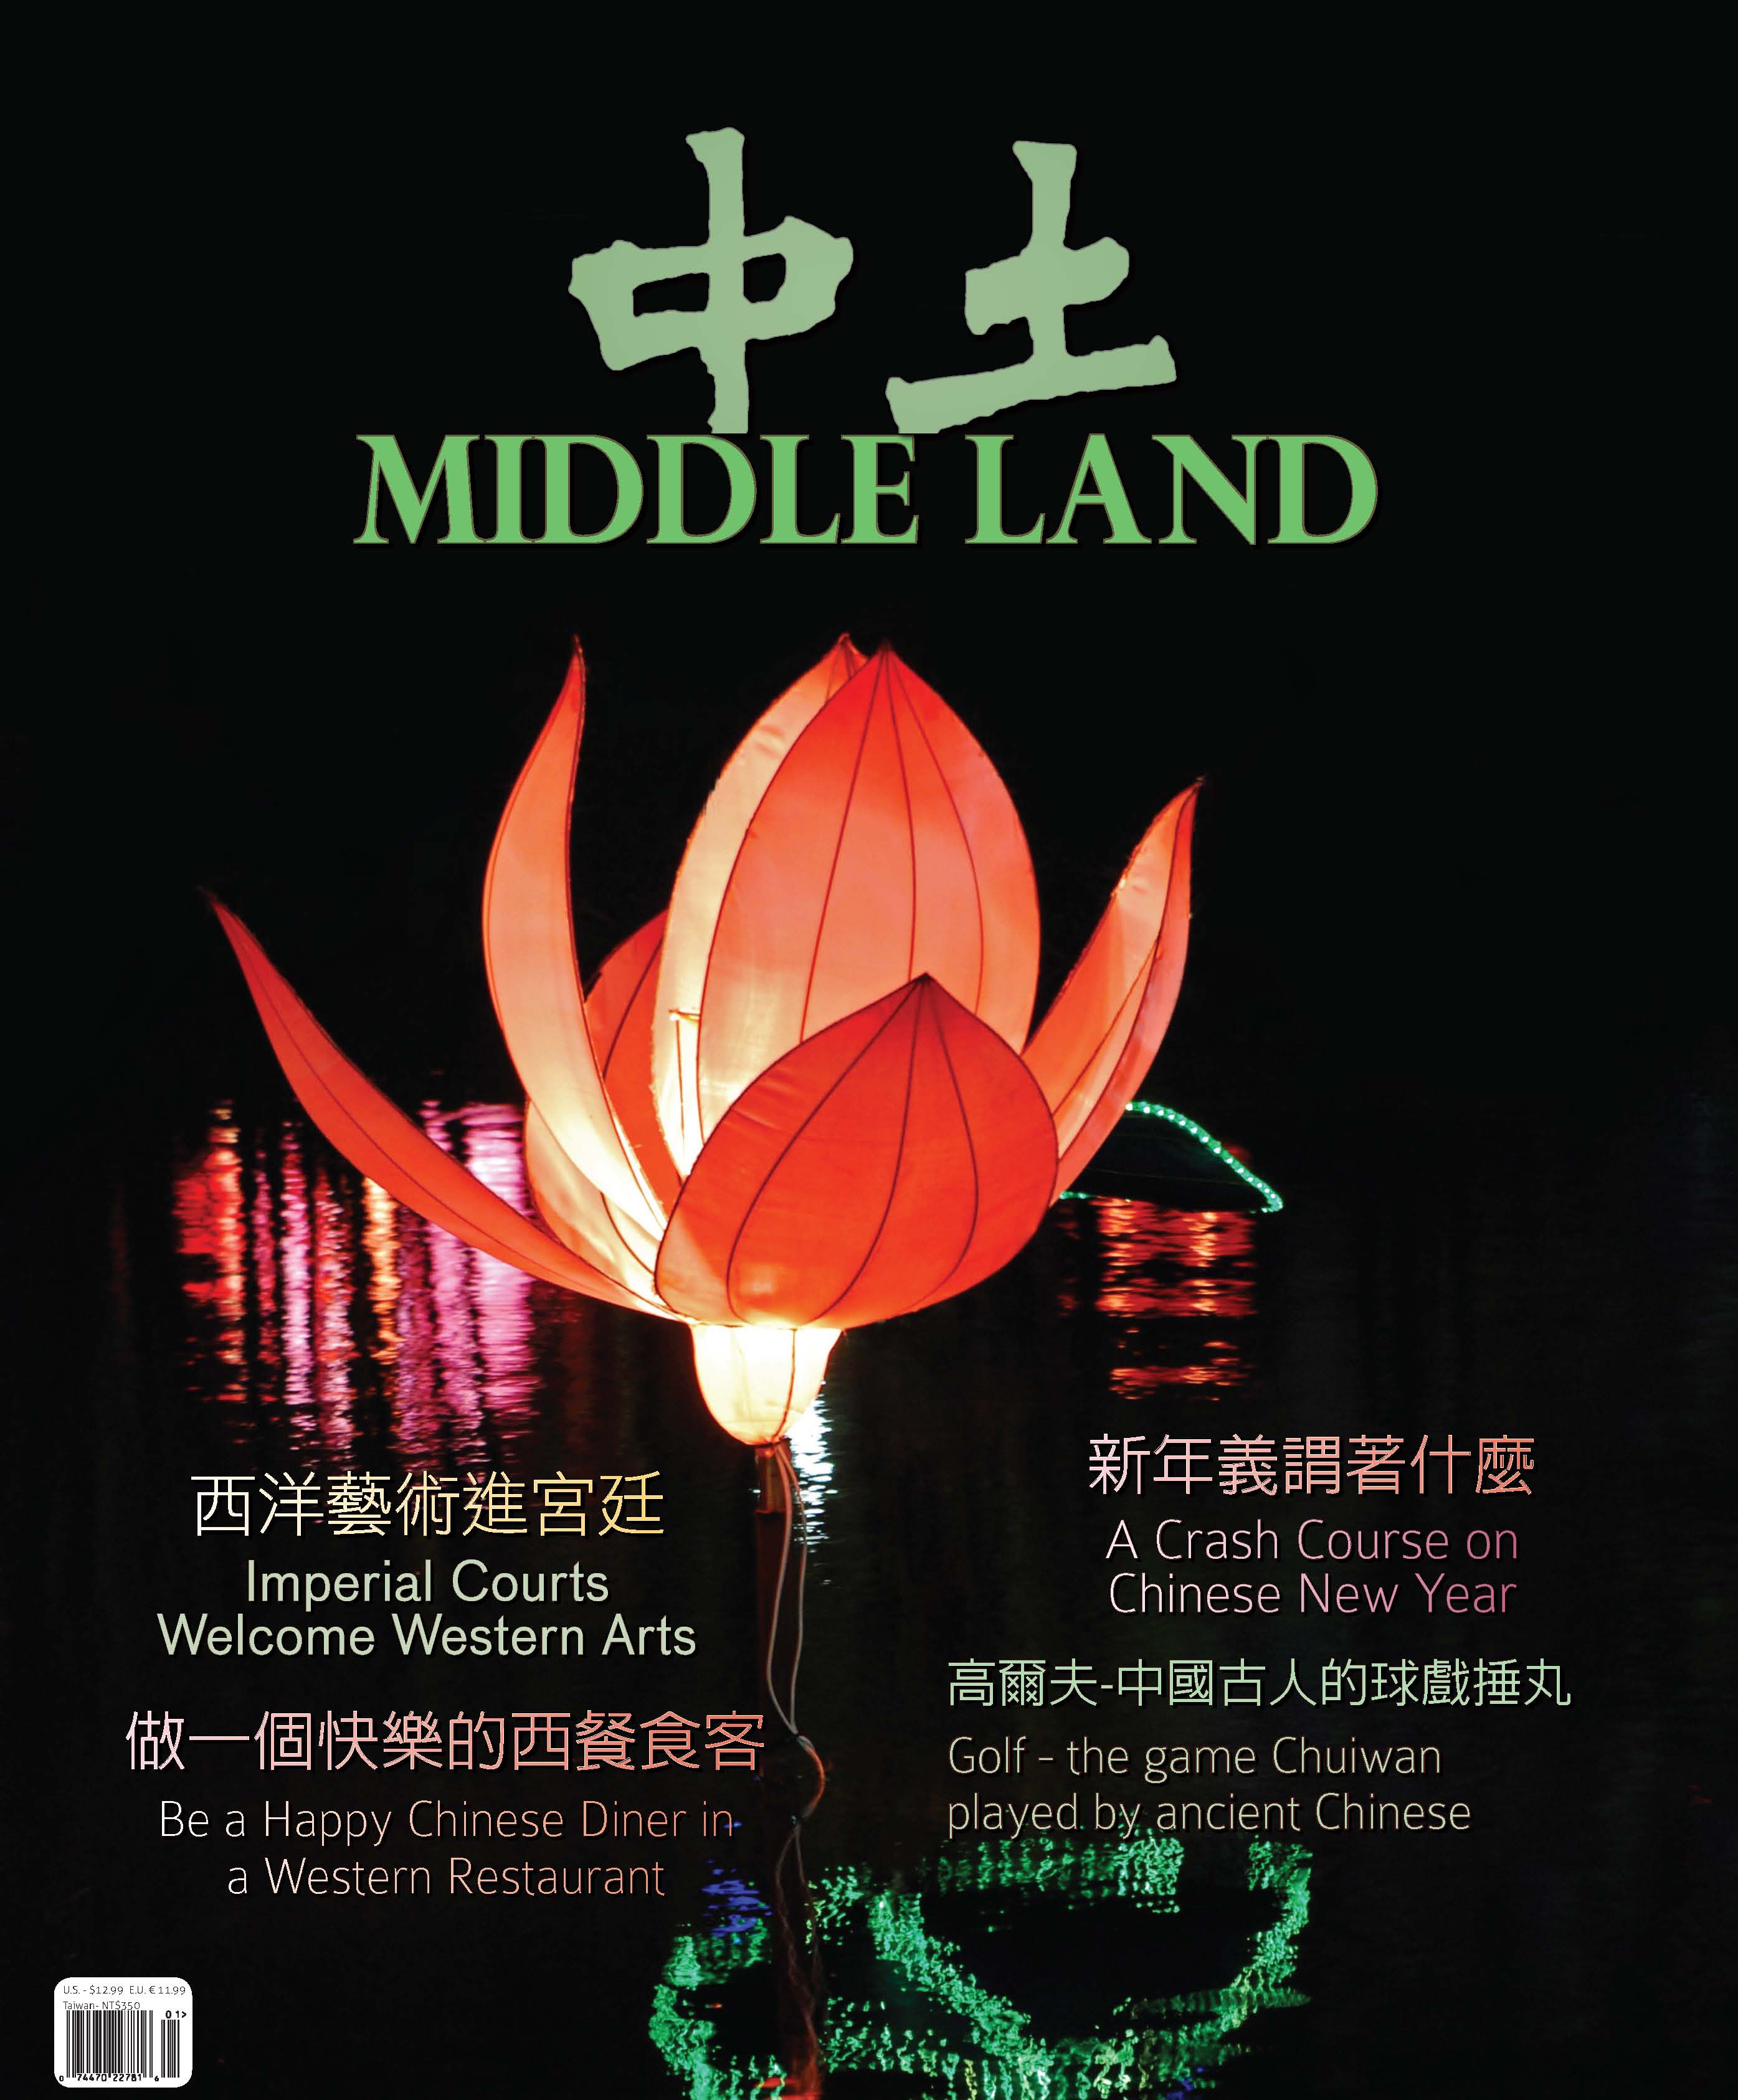 Middle Land  Magazine